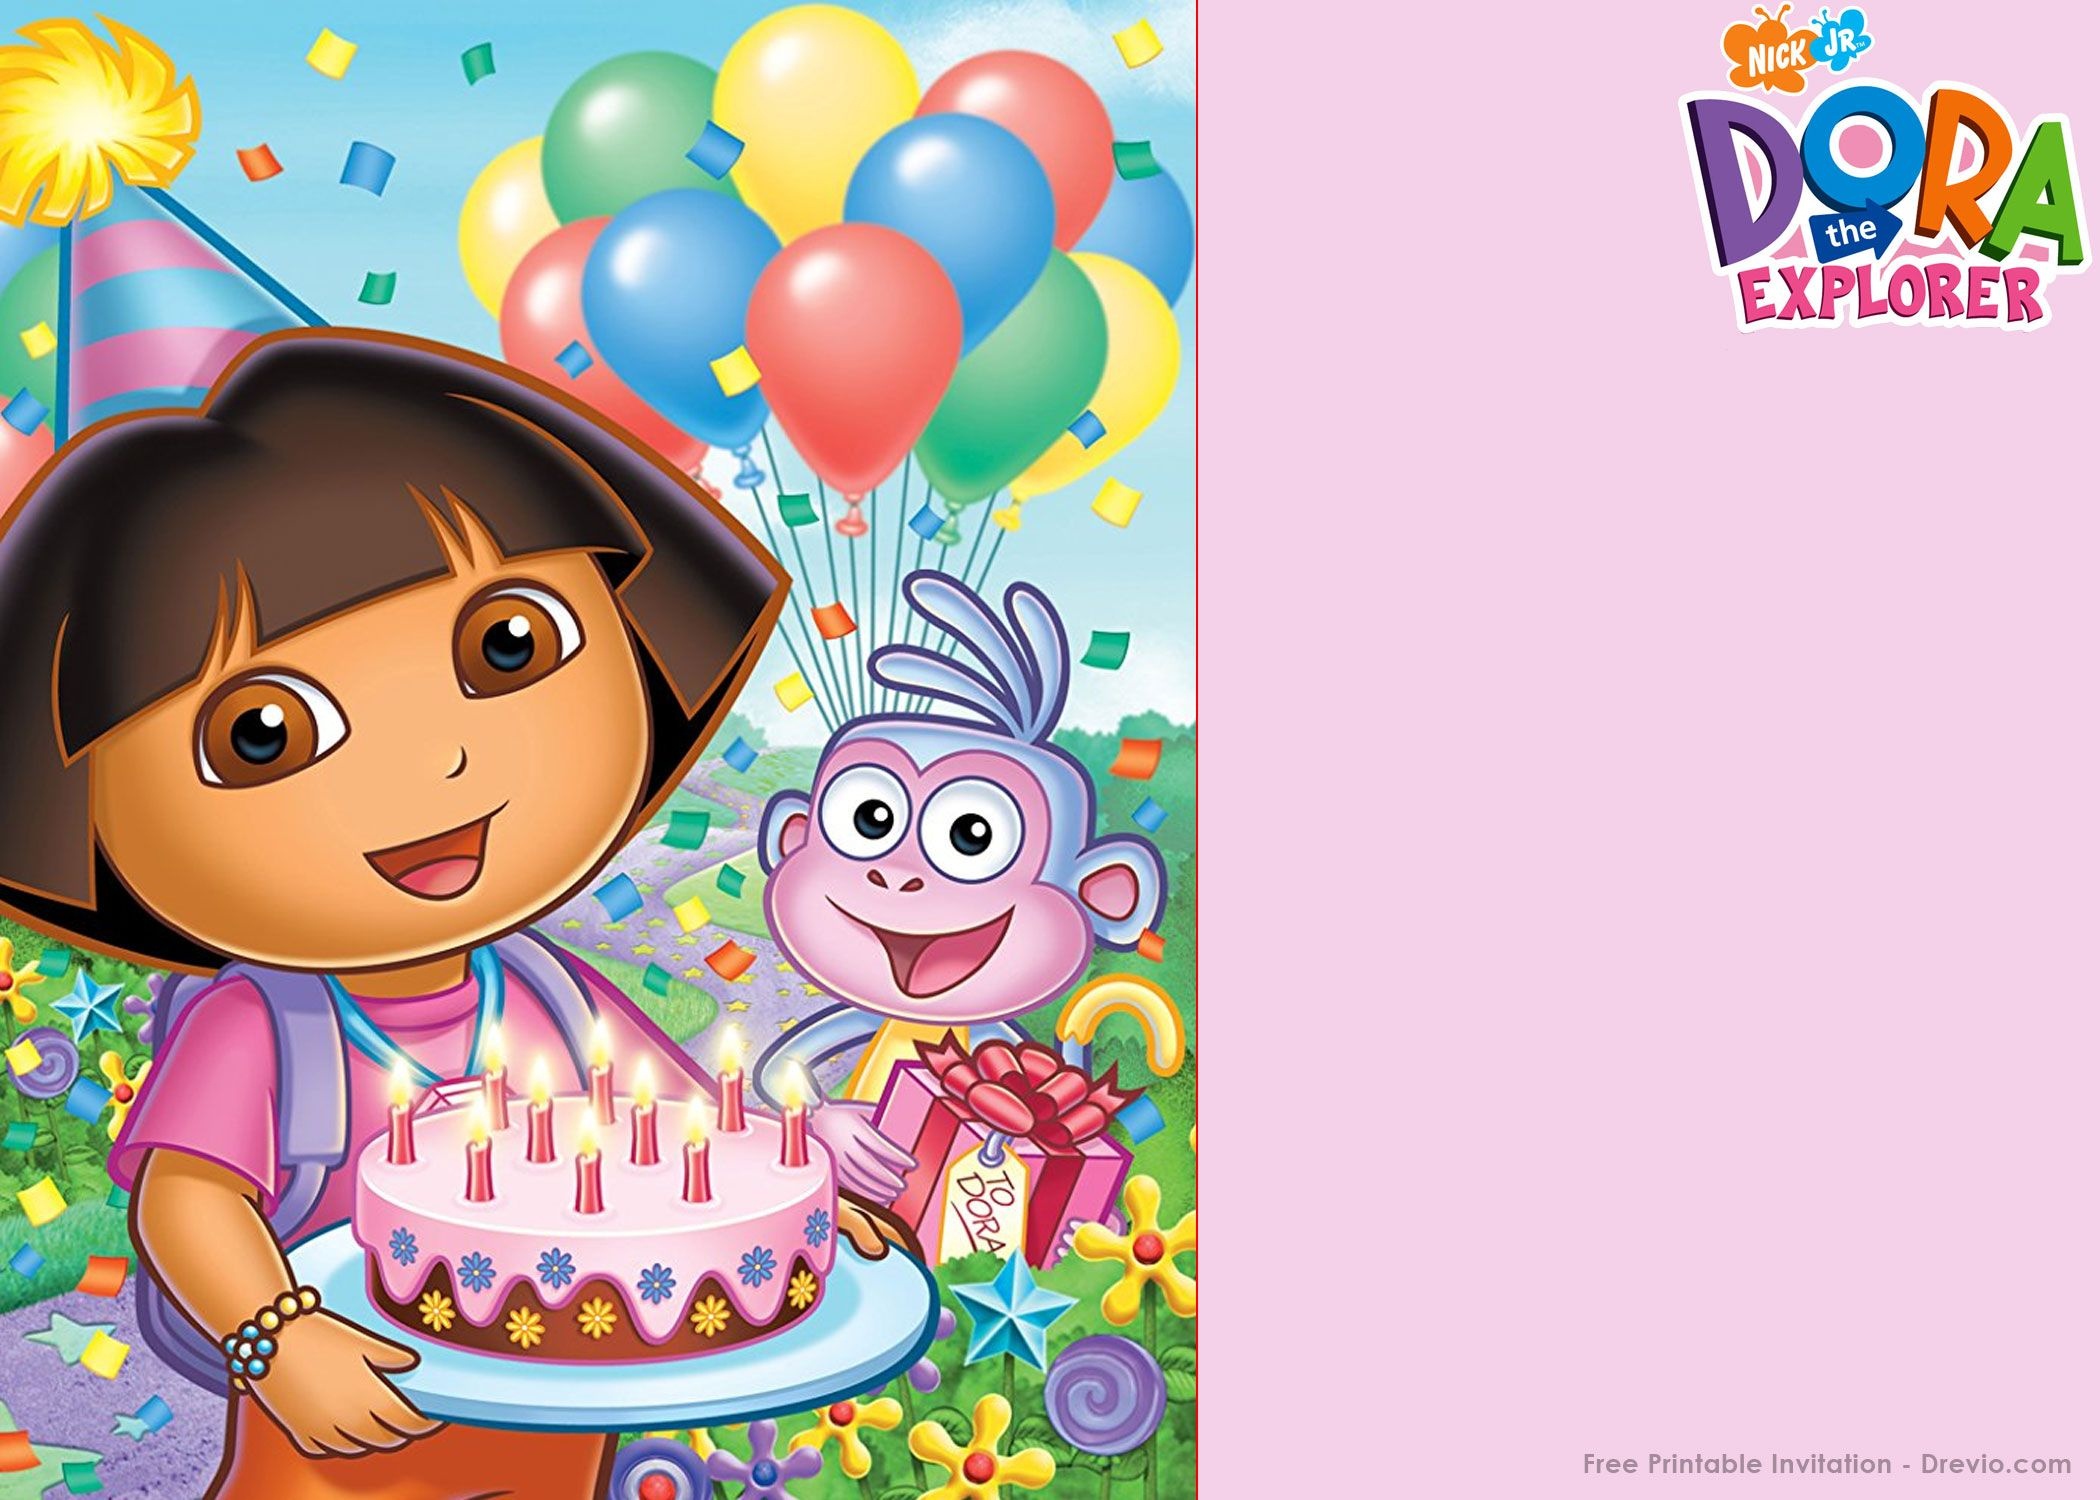 Free Printable Dora The Explorer Party Invitation | Birthday - Dora Birthday Cards Free Printable